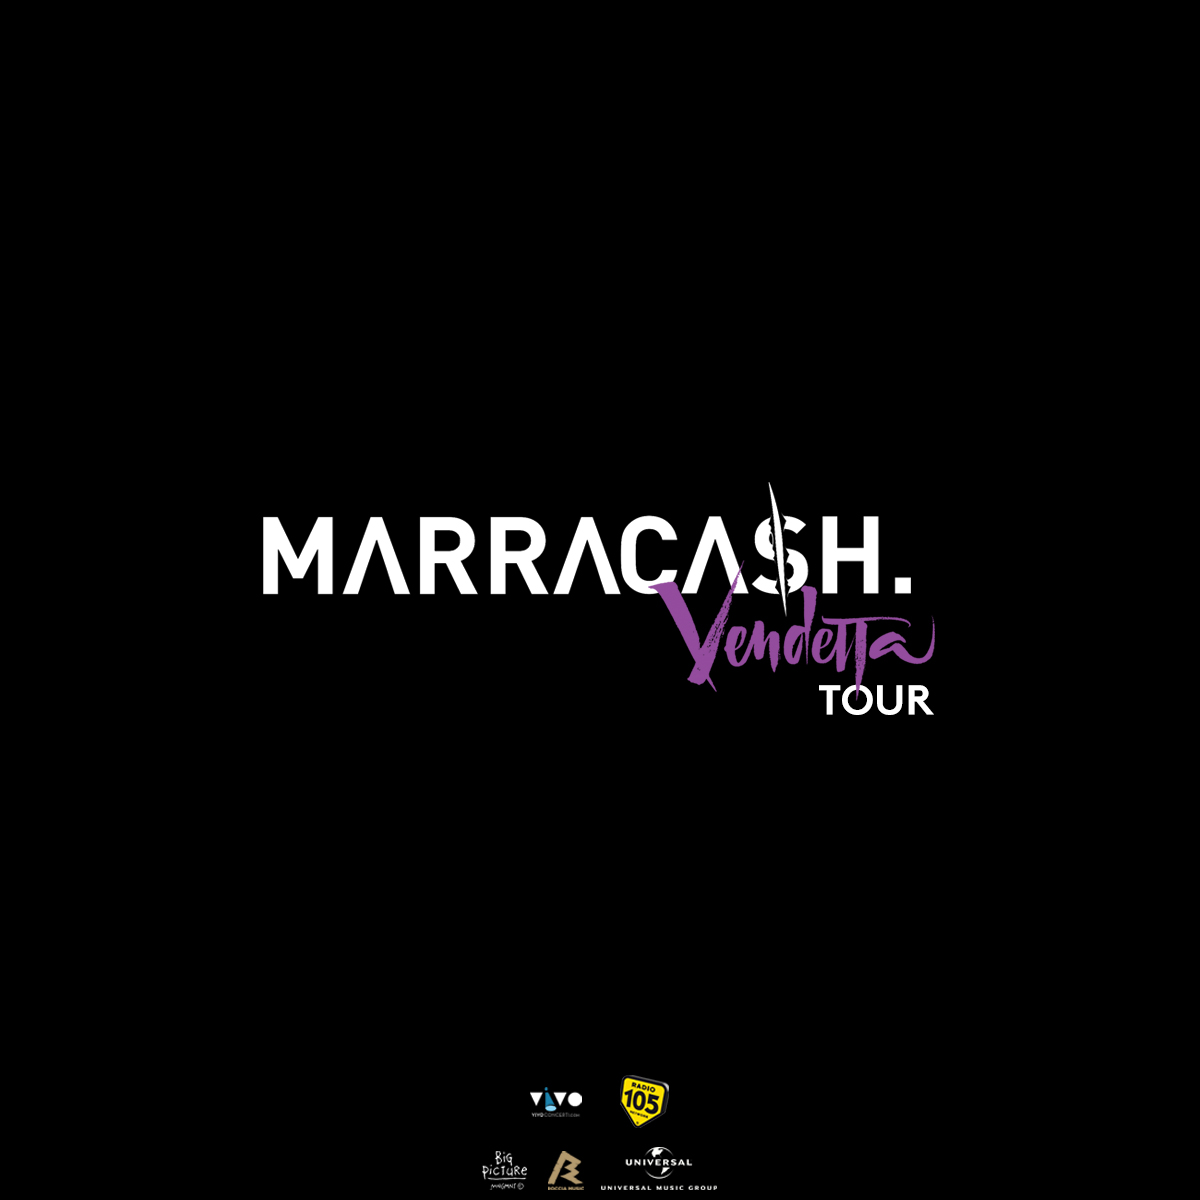  Marracash, arriva all’Atlantico Live di Roma venerdì 26 febbraio 2016 – VIDEOCLIP